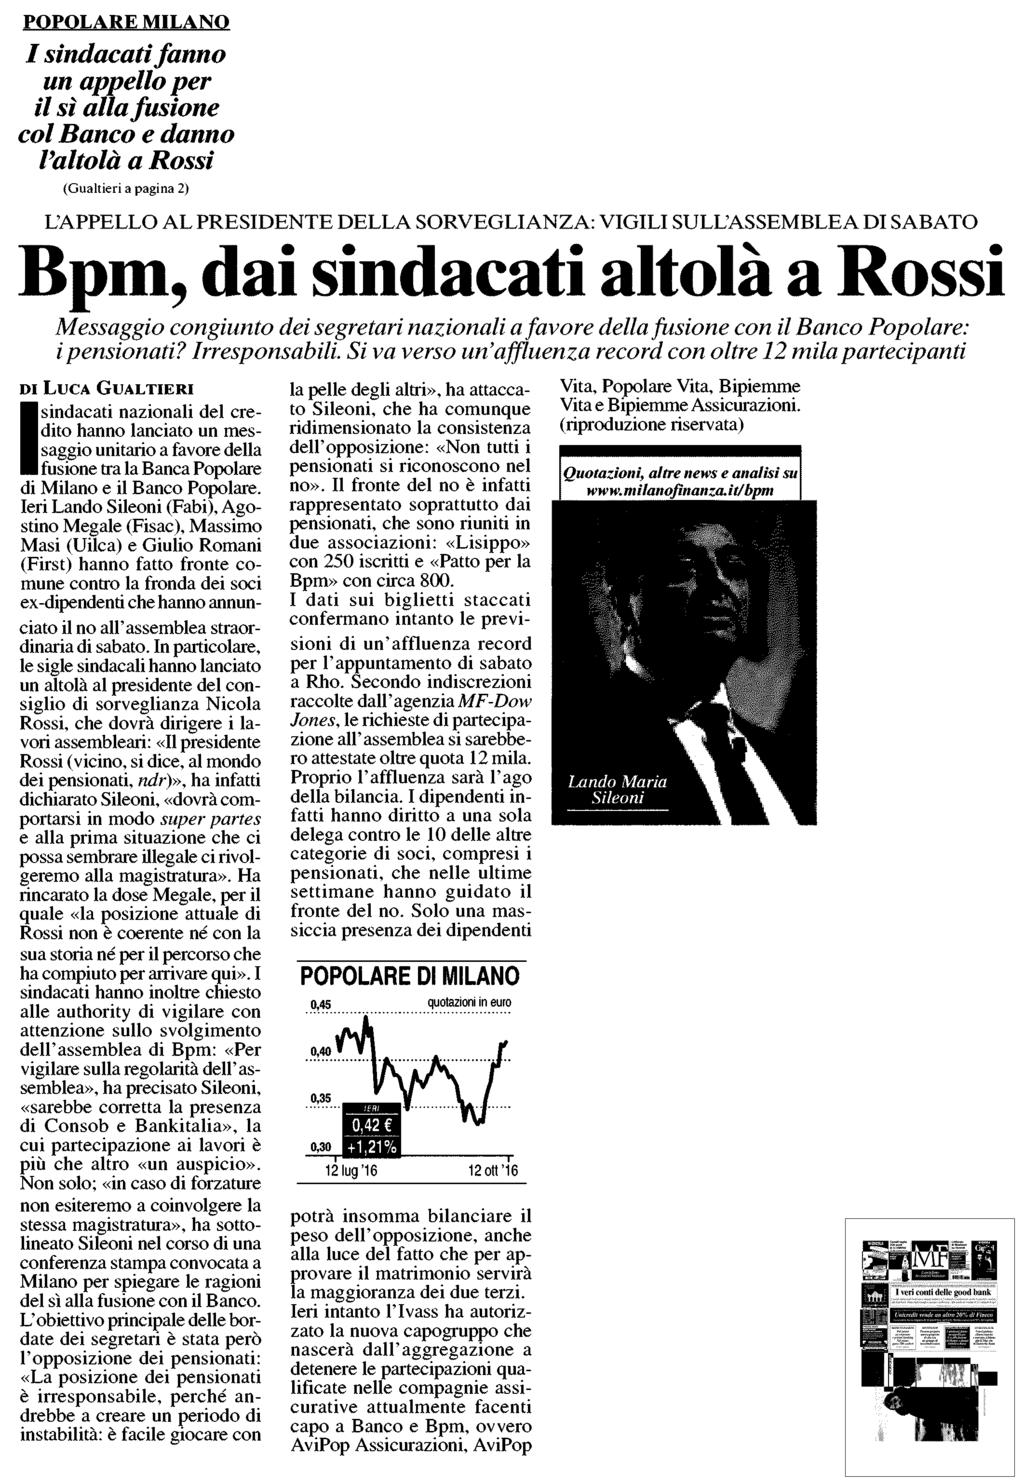 Estratto da pag. 1 POPOLARE MILANO / sindacati fanno un appetto per il sì alla fusione col Banco e danno Voltola a Rossi (Gualtieri a pagina 2) Pierluigi Magnaschi 79.